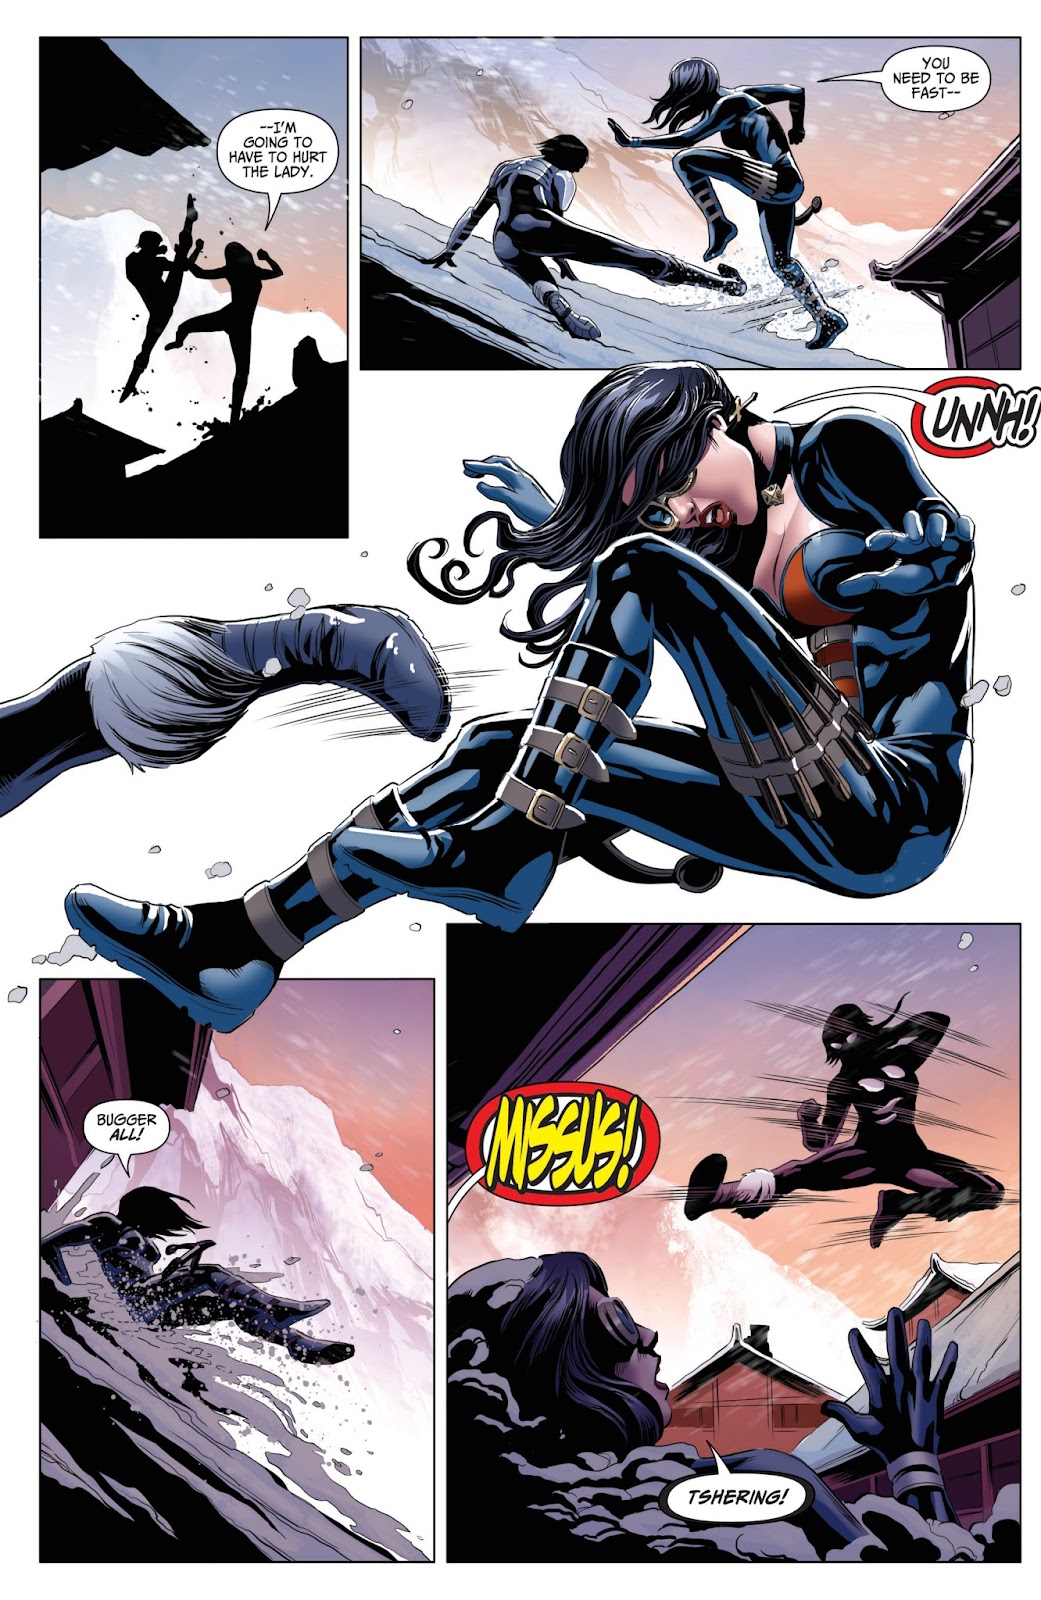 Van Helsing vs. Werewolf issue 2 - Page 17